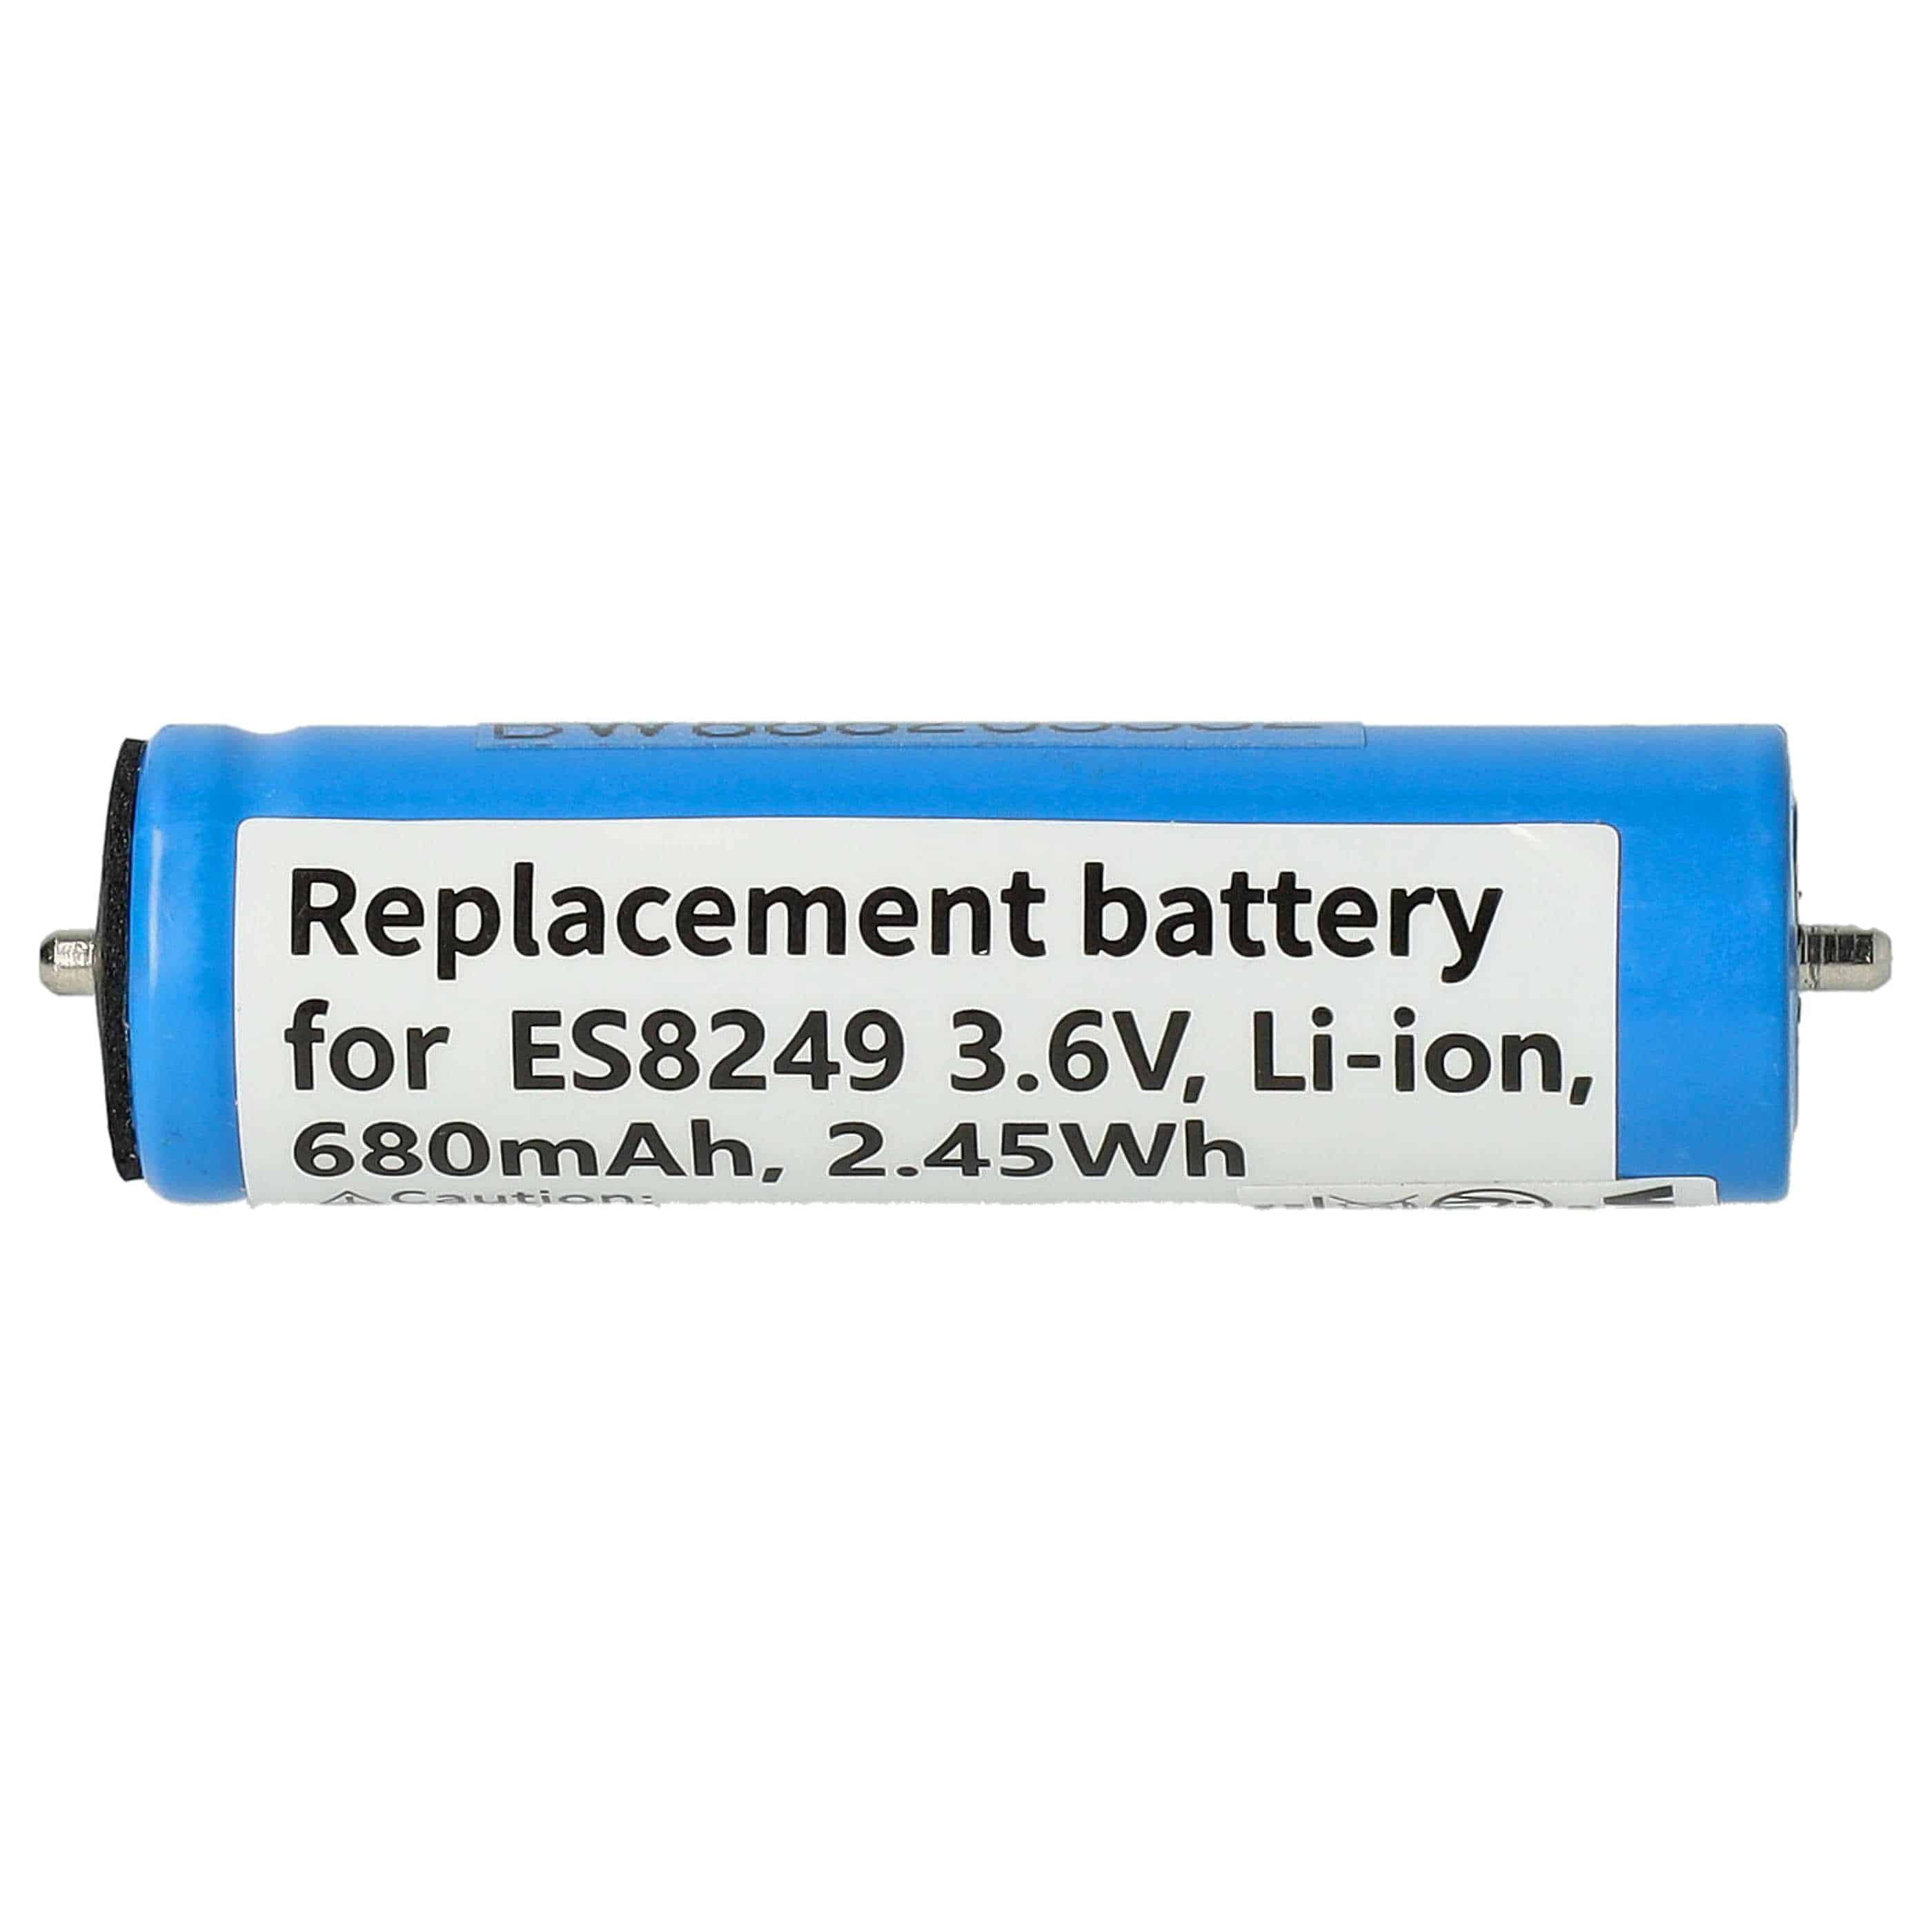 Batterie remplace Panasonic WES8163L2505, V9ZL2508, K0360-0570 pour rasoir électrique - 680mAh 3,6V Li-ion